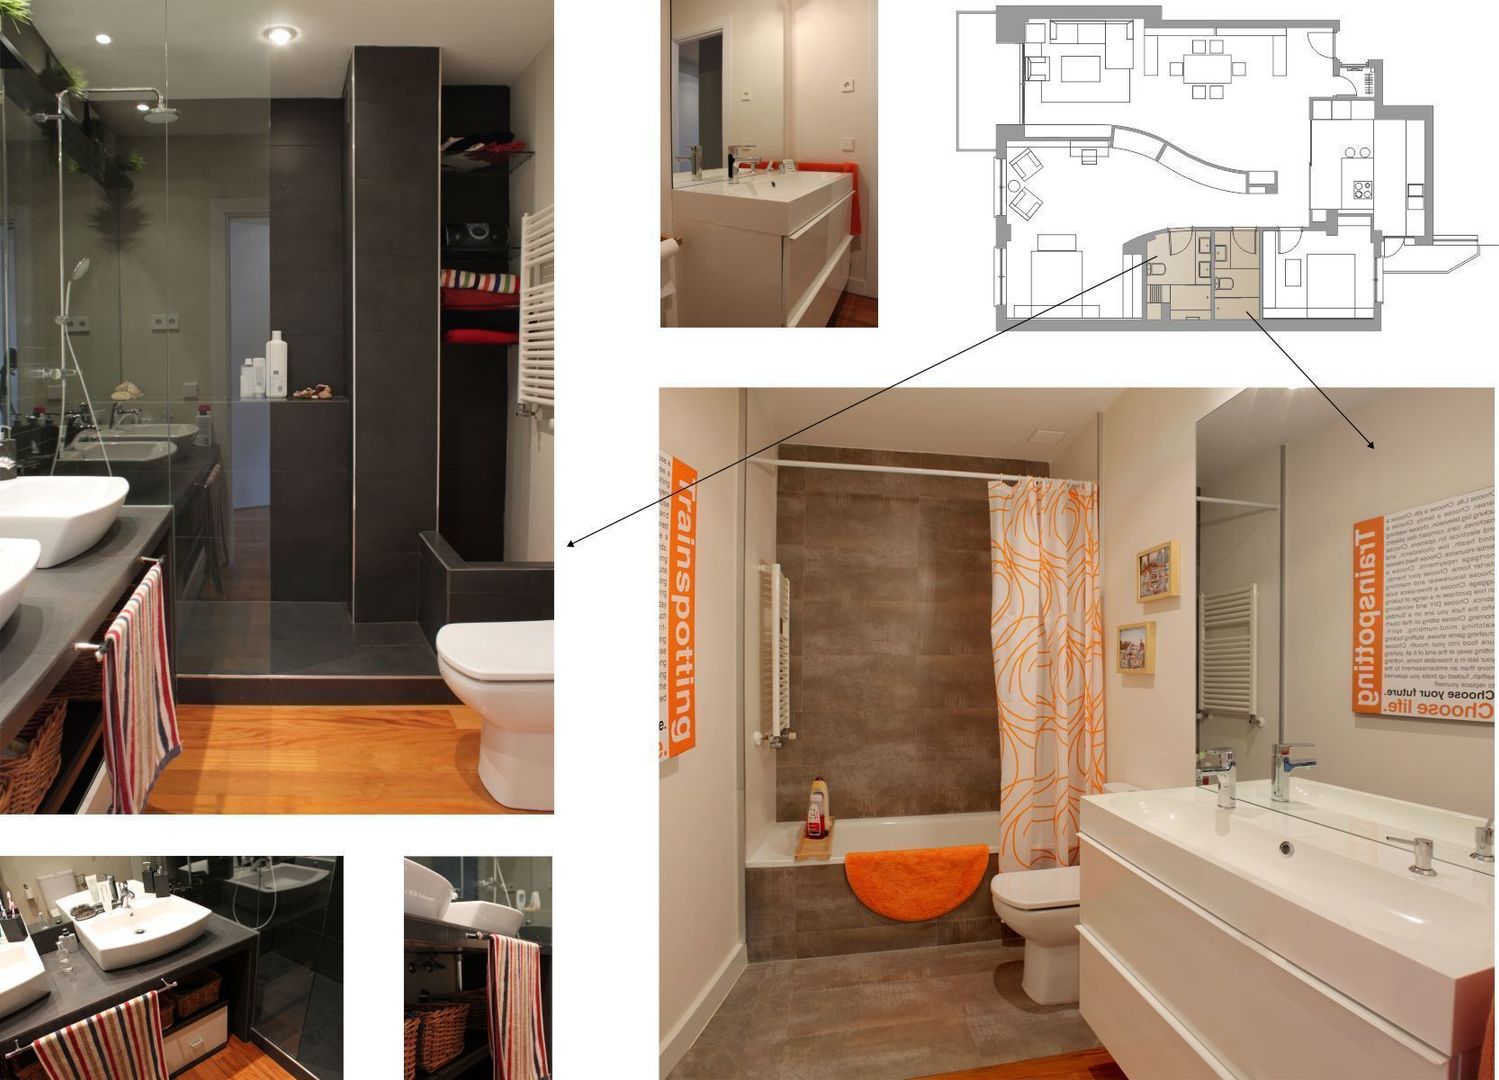 proyecto y obra de reforma en vivienda, elementos interiorismo y diseño elementos interiorismo y diseño Modern style bathrooms